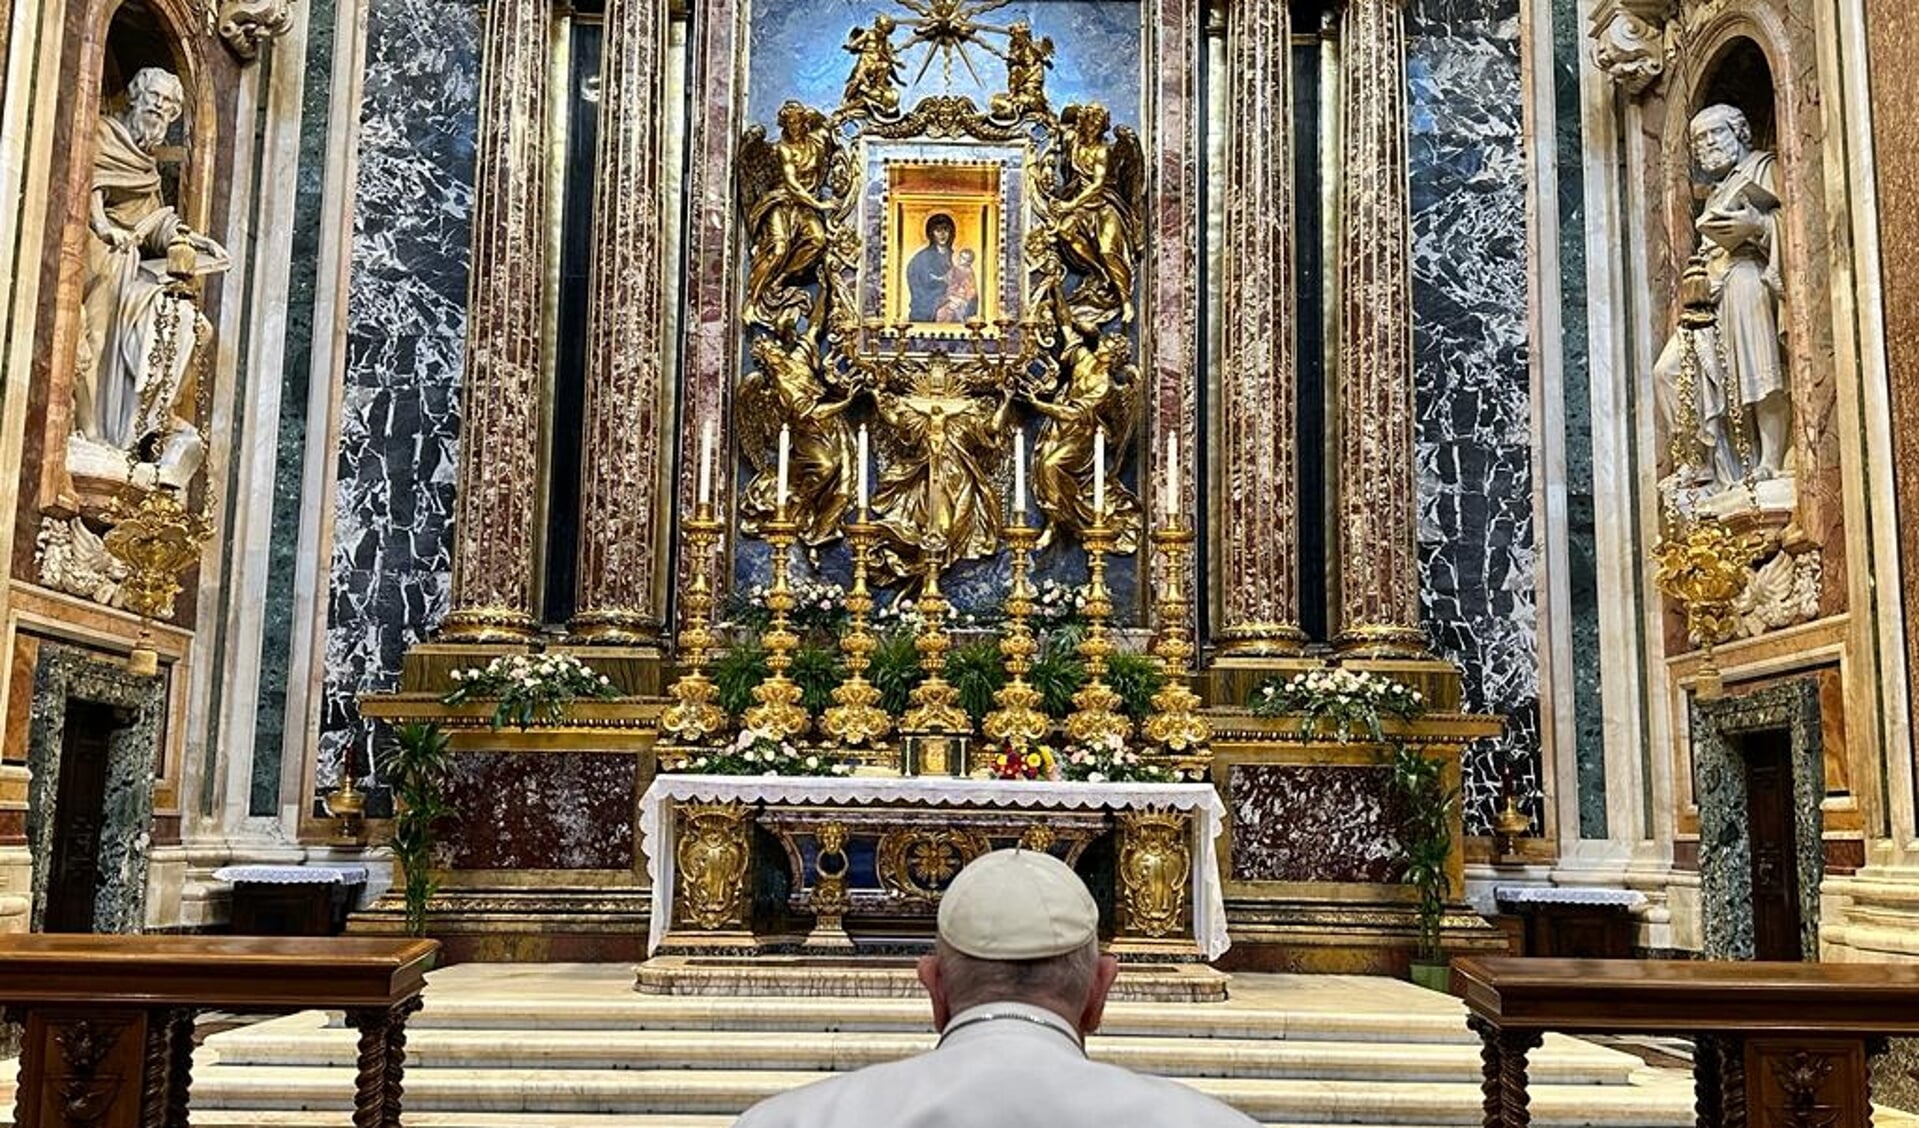 Maandagmiddag ging paus Franciscus naar de basiliek Santa Maria Maggiore in Rome om te bidden voor zijn reis naar de Democratische Republiek Congo en Zuid-Soedan die dinsdag begint.